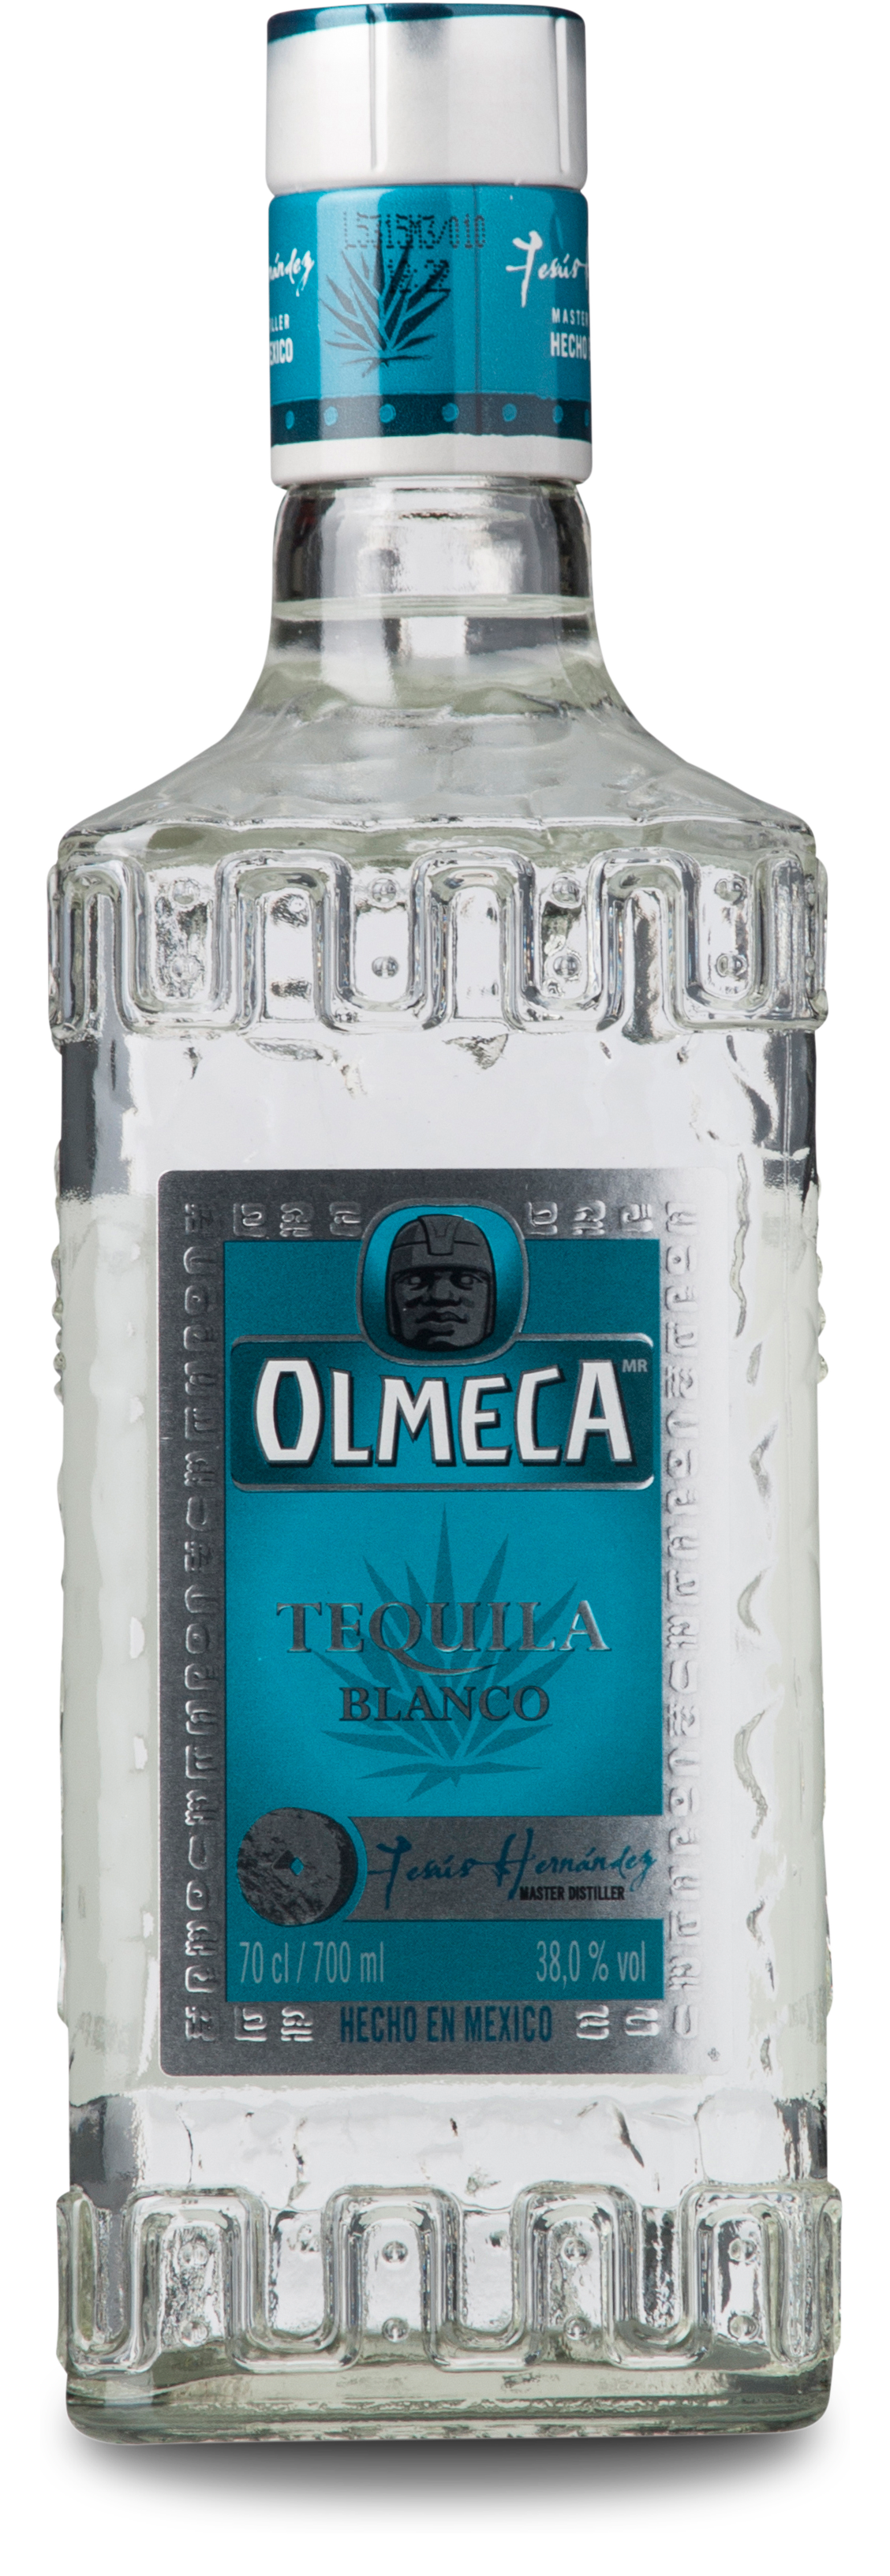 Olmeca Tequila Blanco 38%, 70 cl